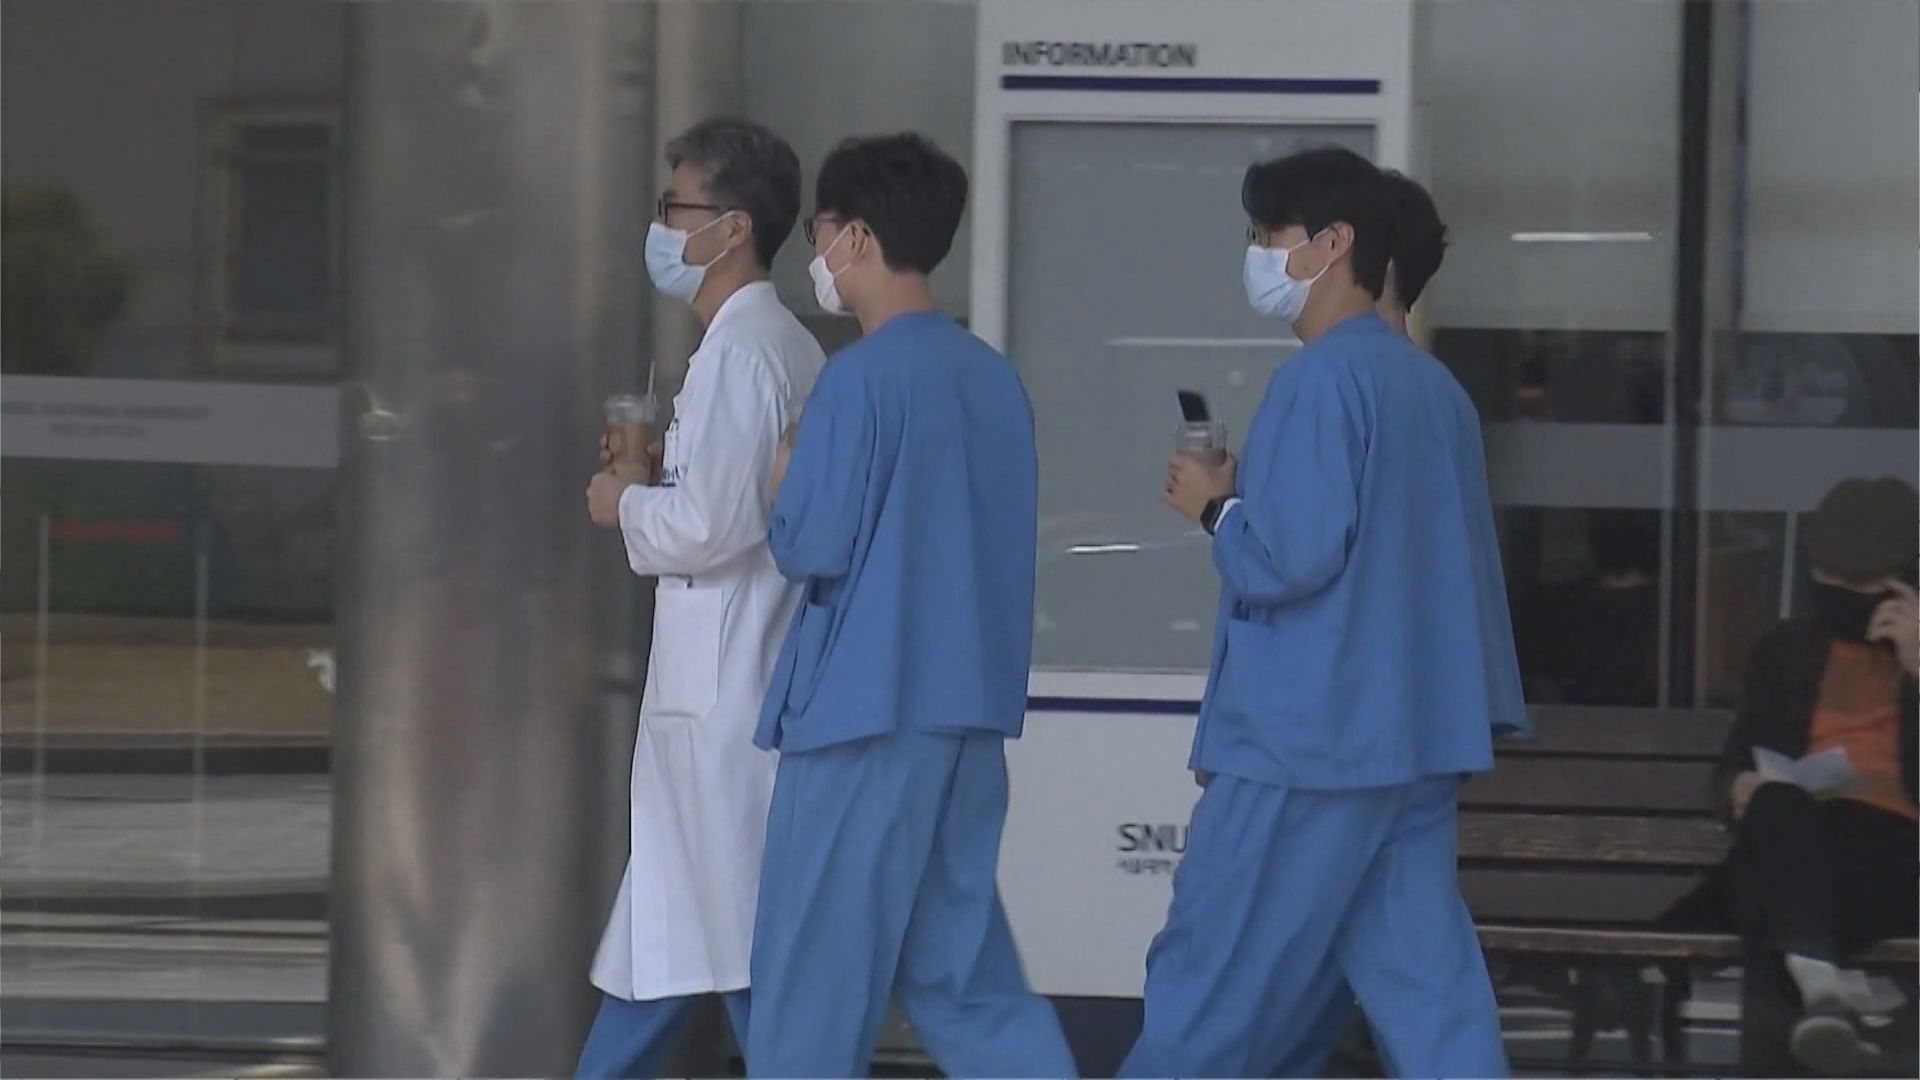 南韓允許醫學院在規定範圍內調整擴大招收醫科生規模